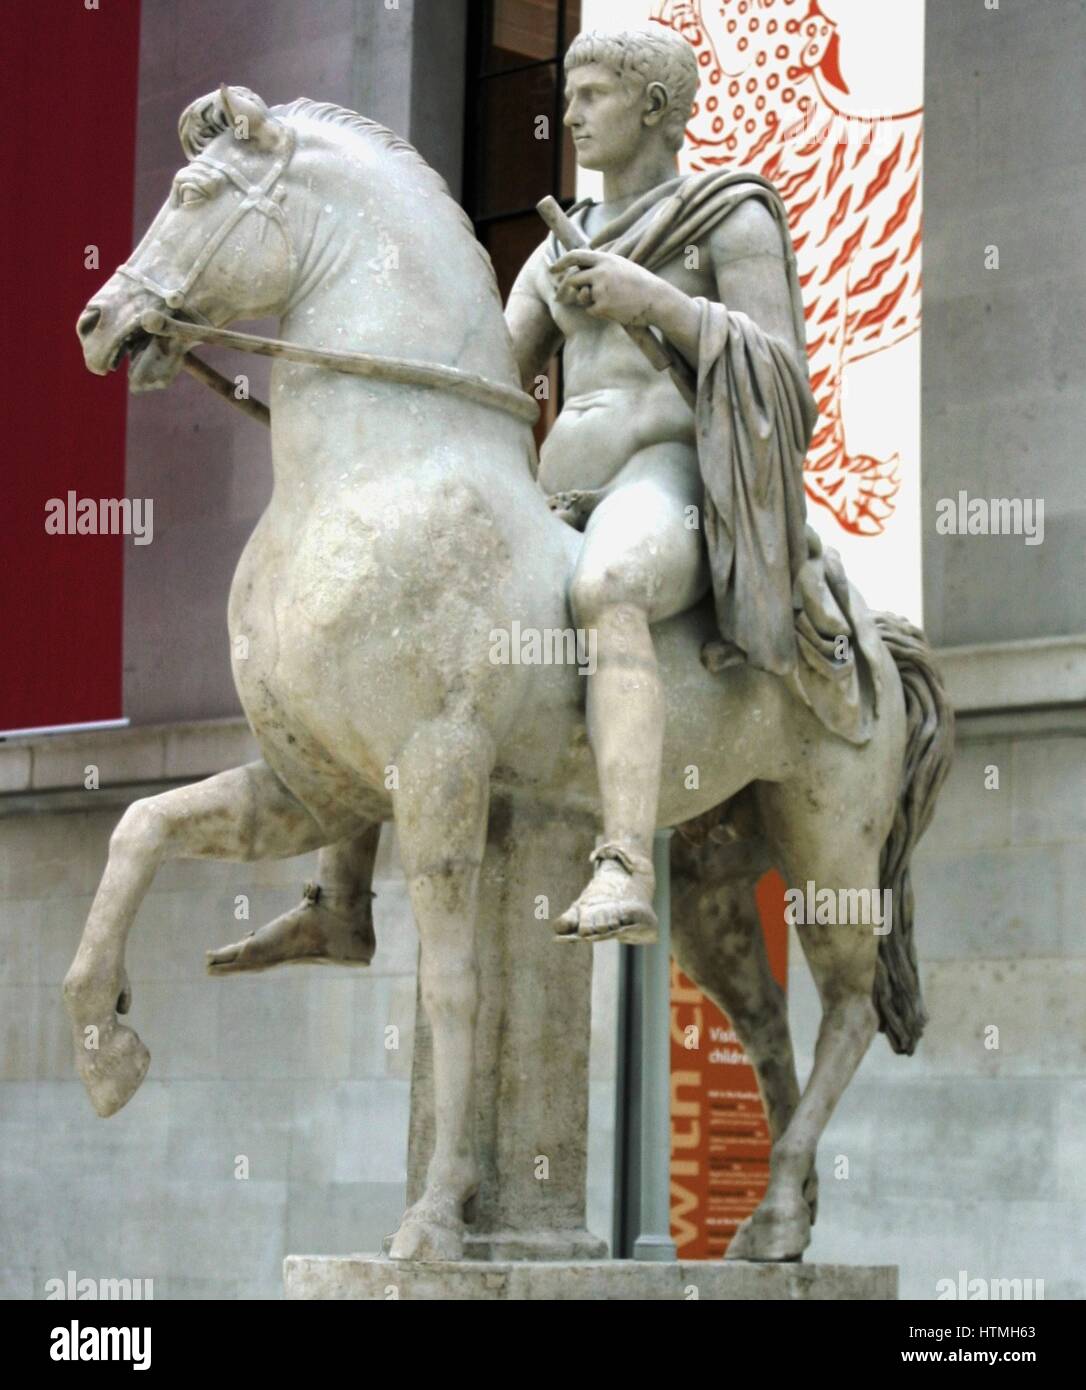 Statue en marbre d'un jeune homme à cheval, Roman, sculpté en Italie. La sculpture représente peut-être un prince d'une famille impériale romaine. Banque D'Images